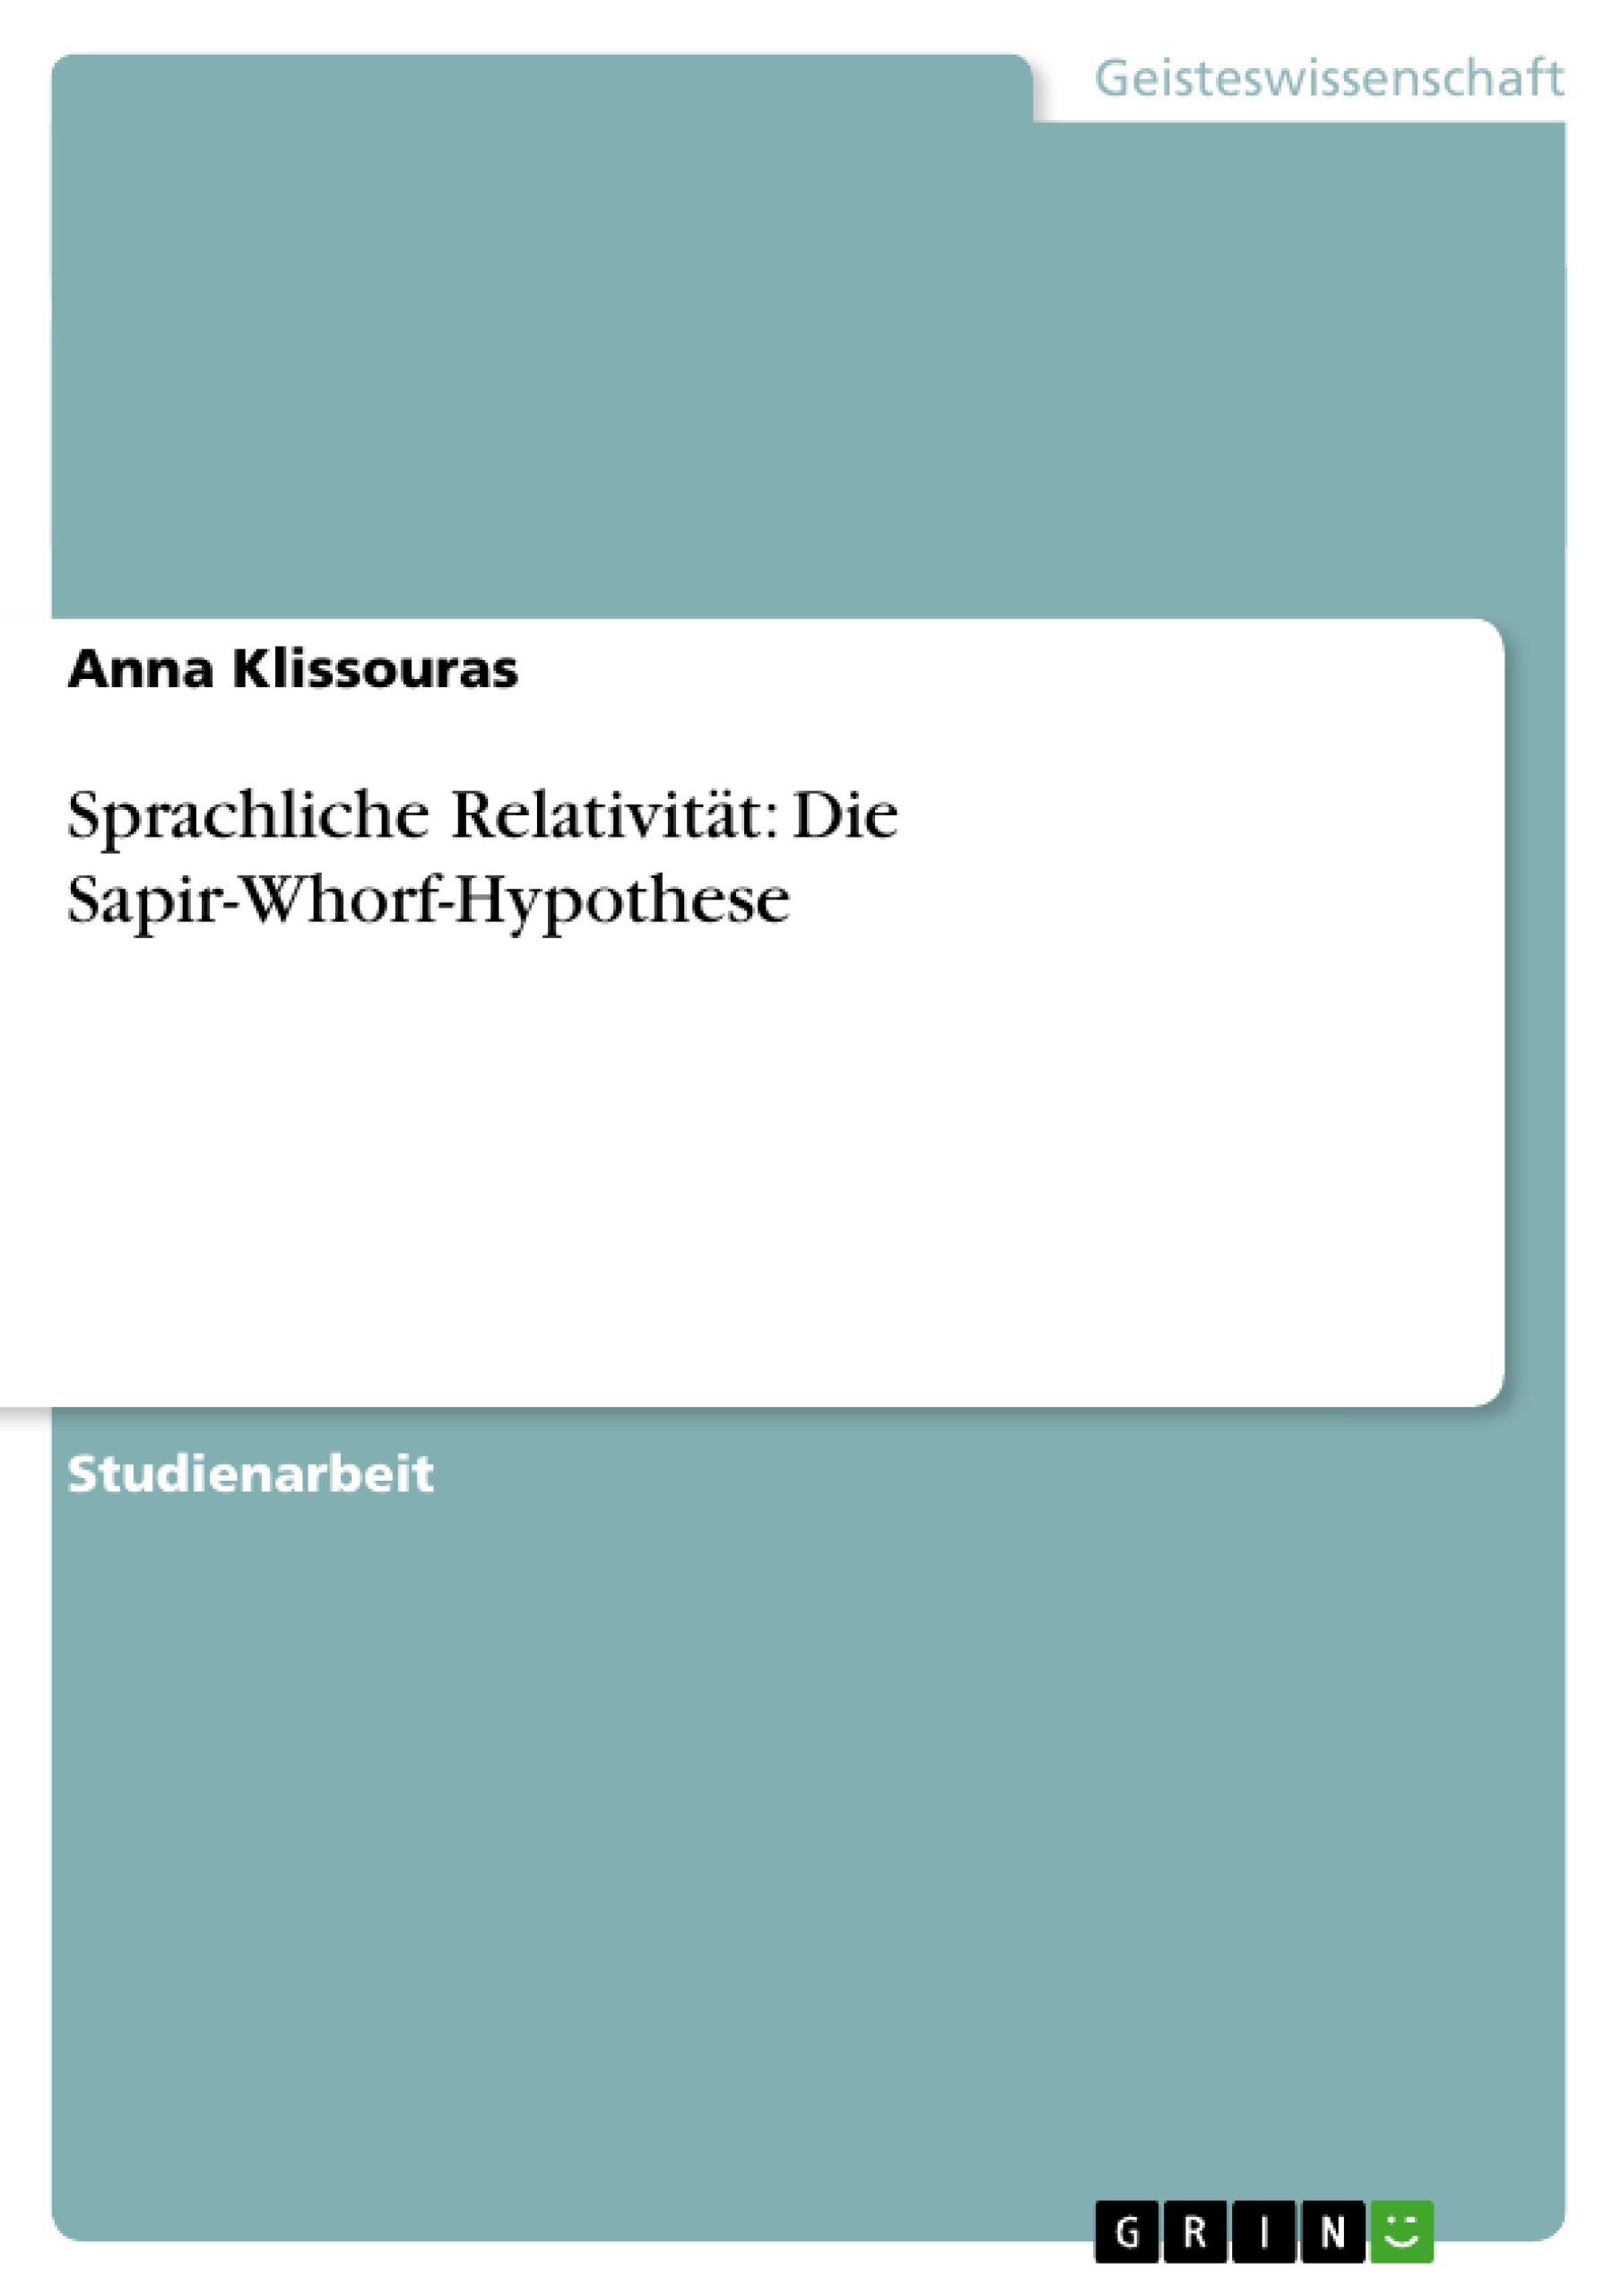 Título: Sprachliche Relativität: Die Sapir-Whorf-Hypothese